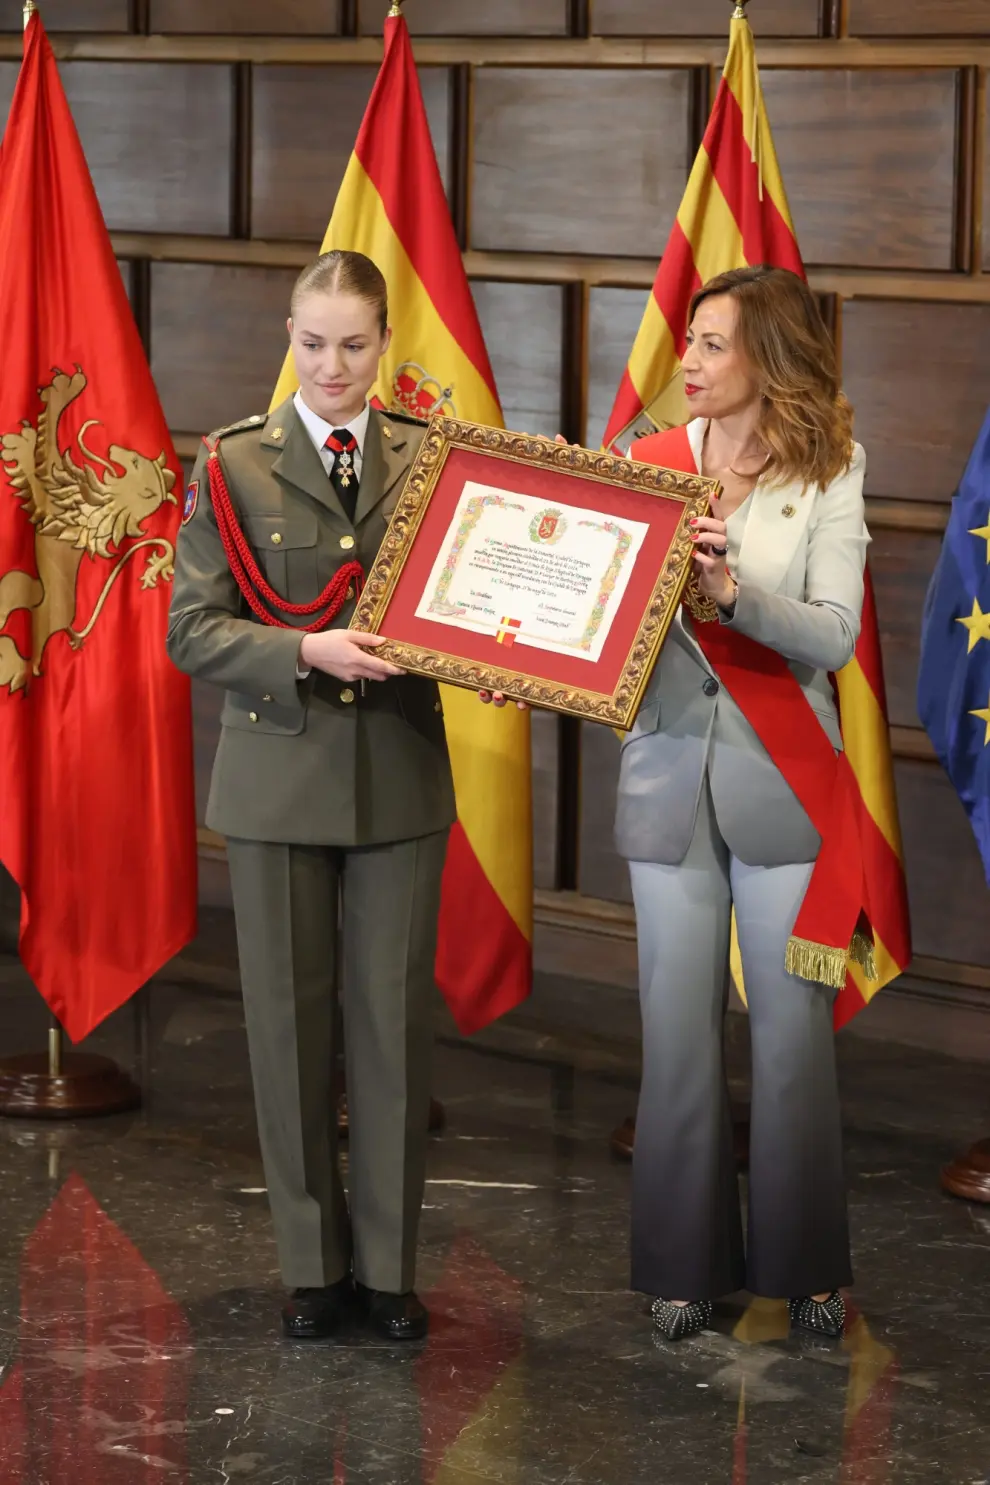 La princesa de Asturias, Leonor de Borbón, saluda al público después de recibir sendos homenajes por parte de las principales instituciones aragonesas y de la ciudad de Zaragoza